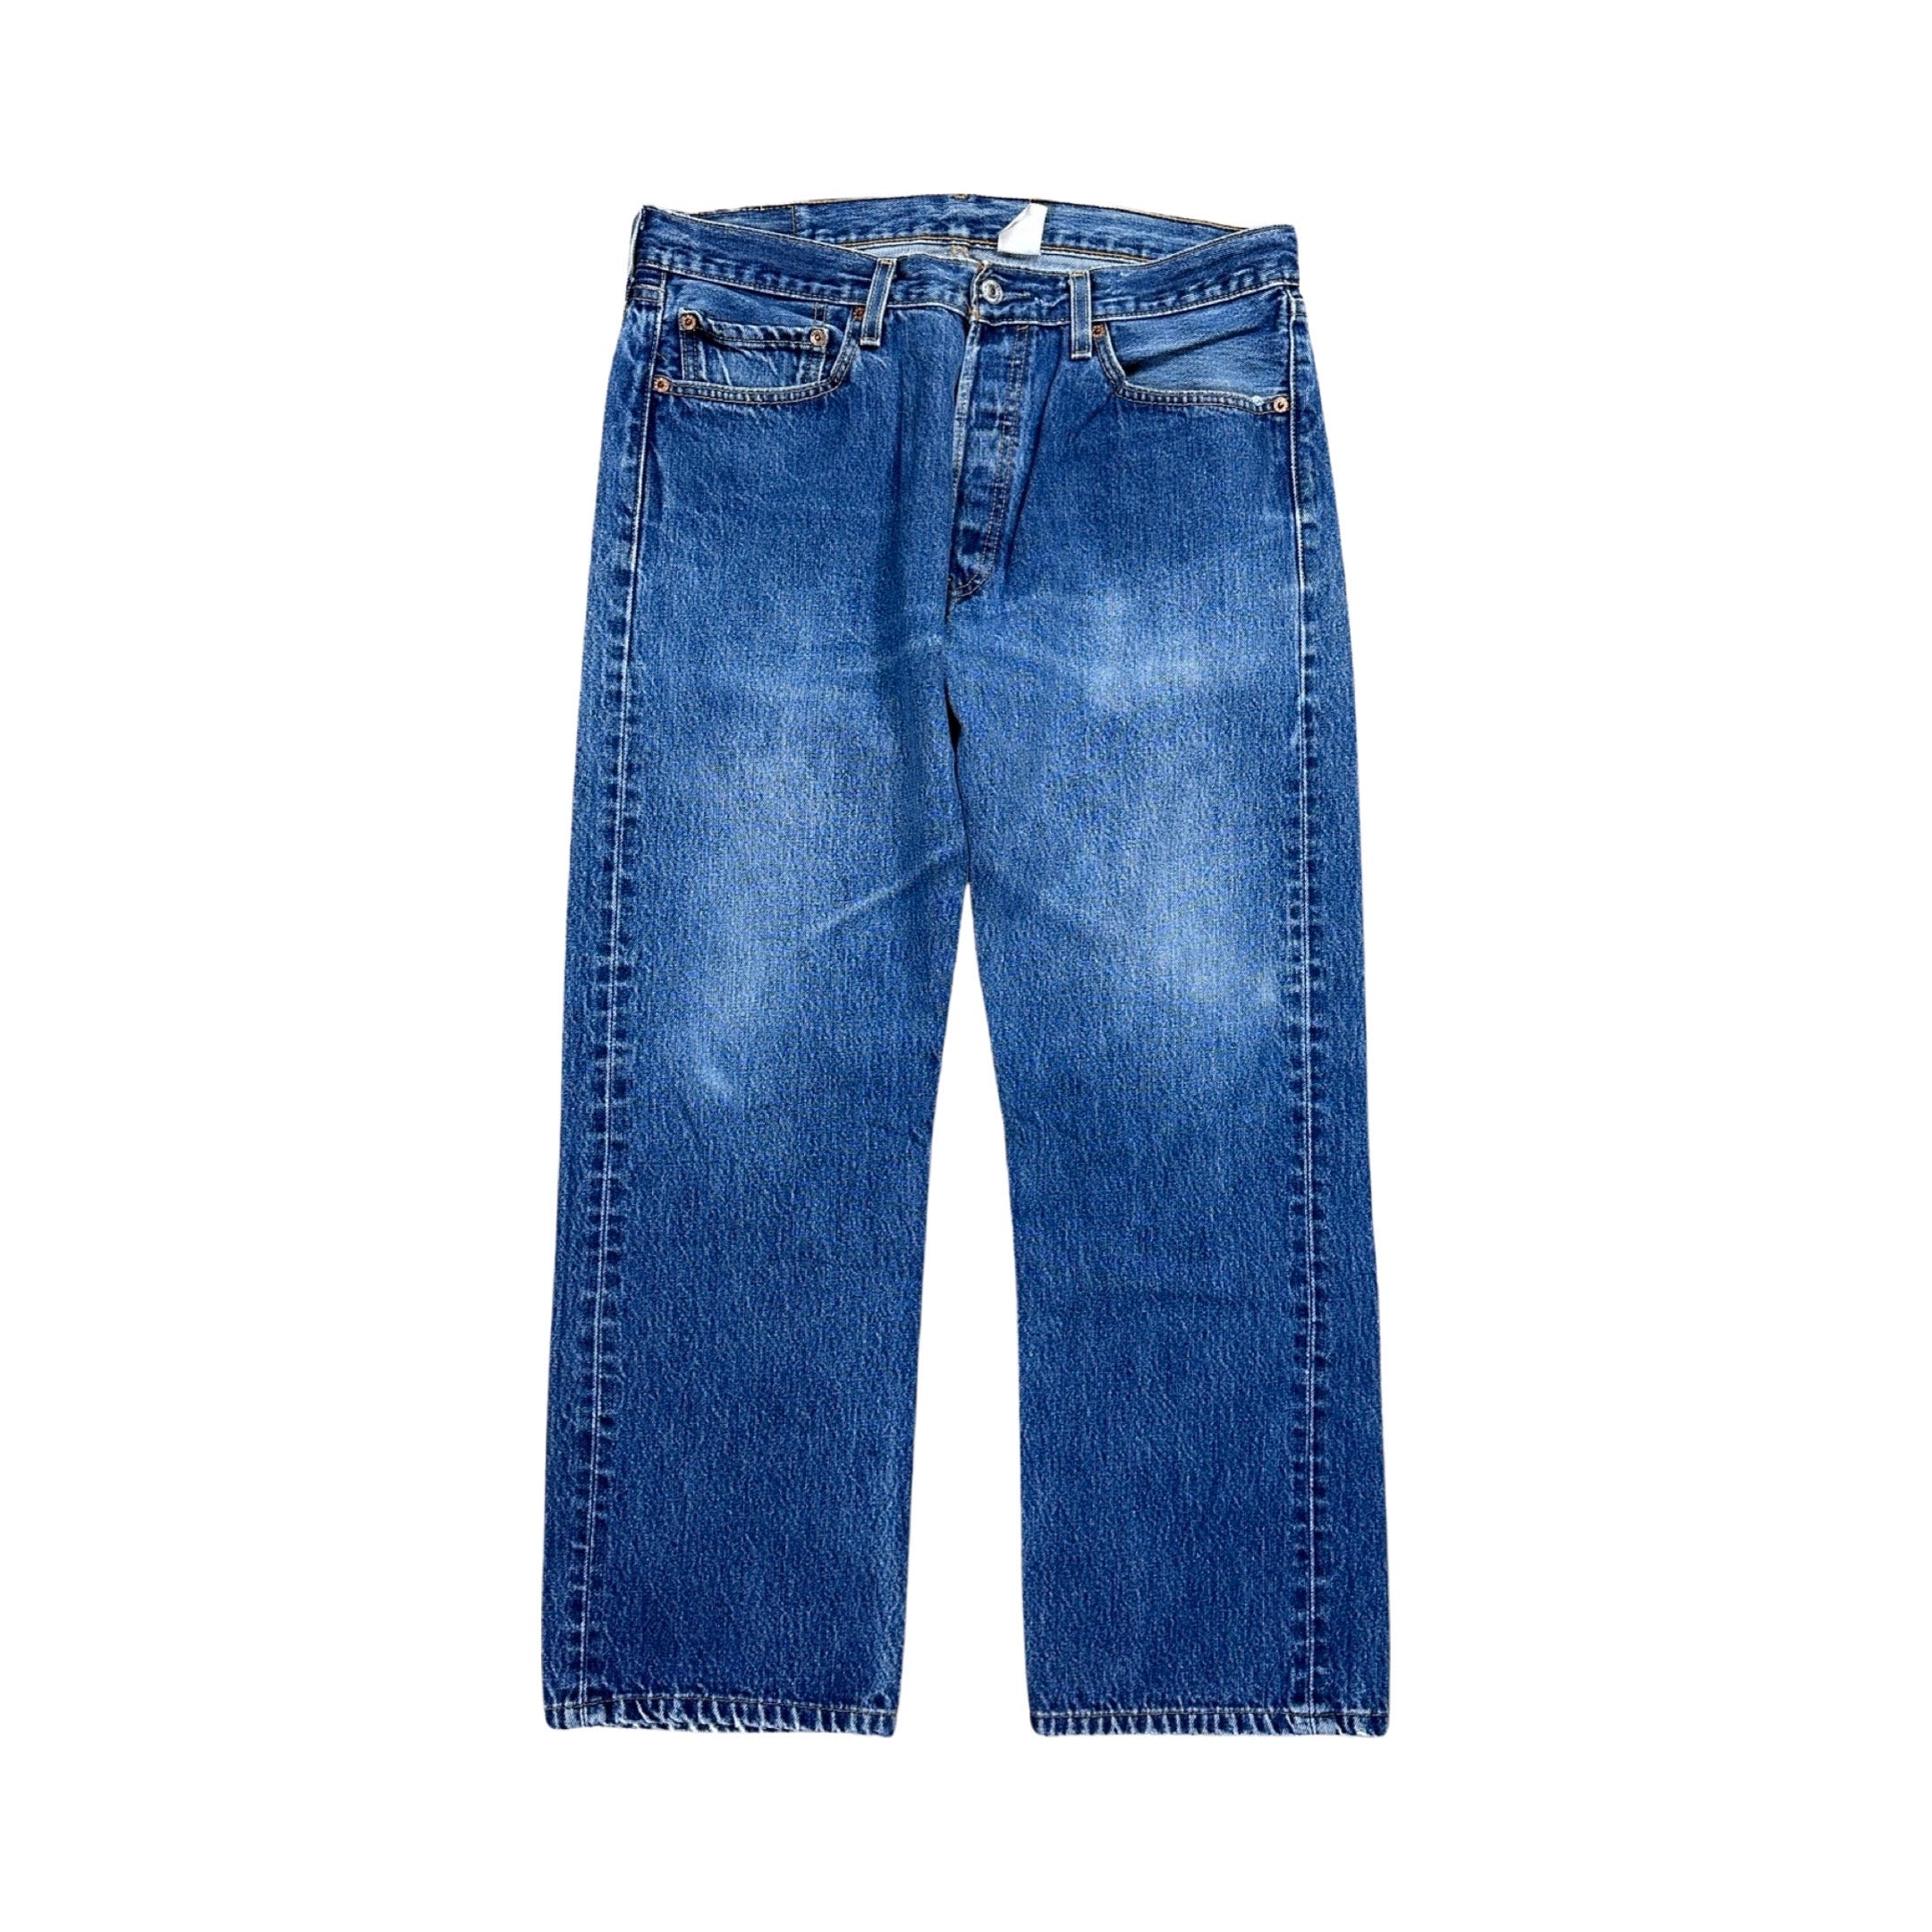 Levi’s 501 Jeans 2003 (34”)